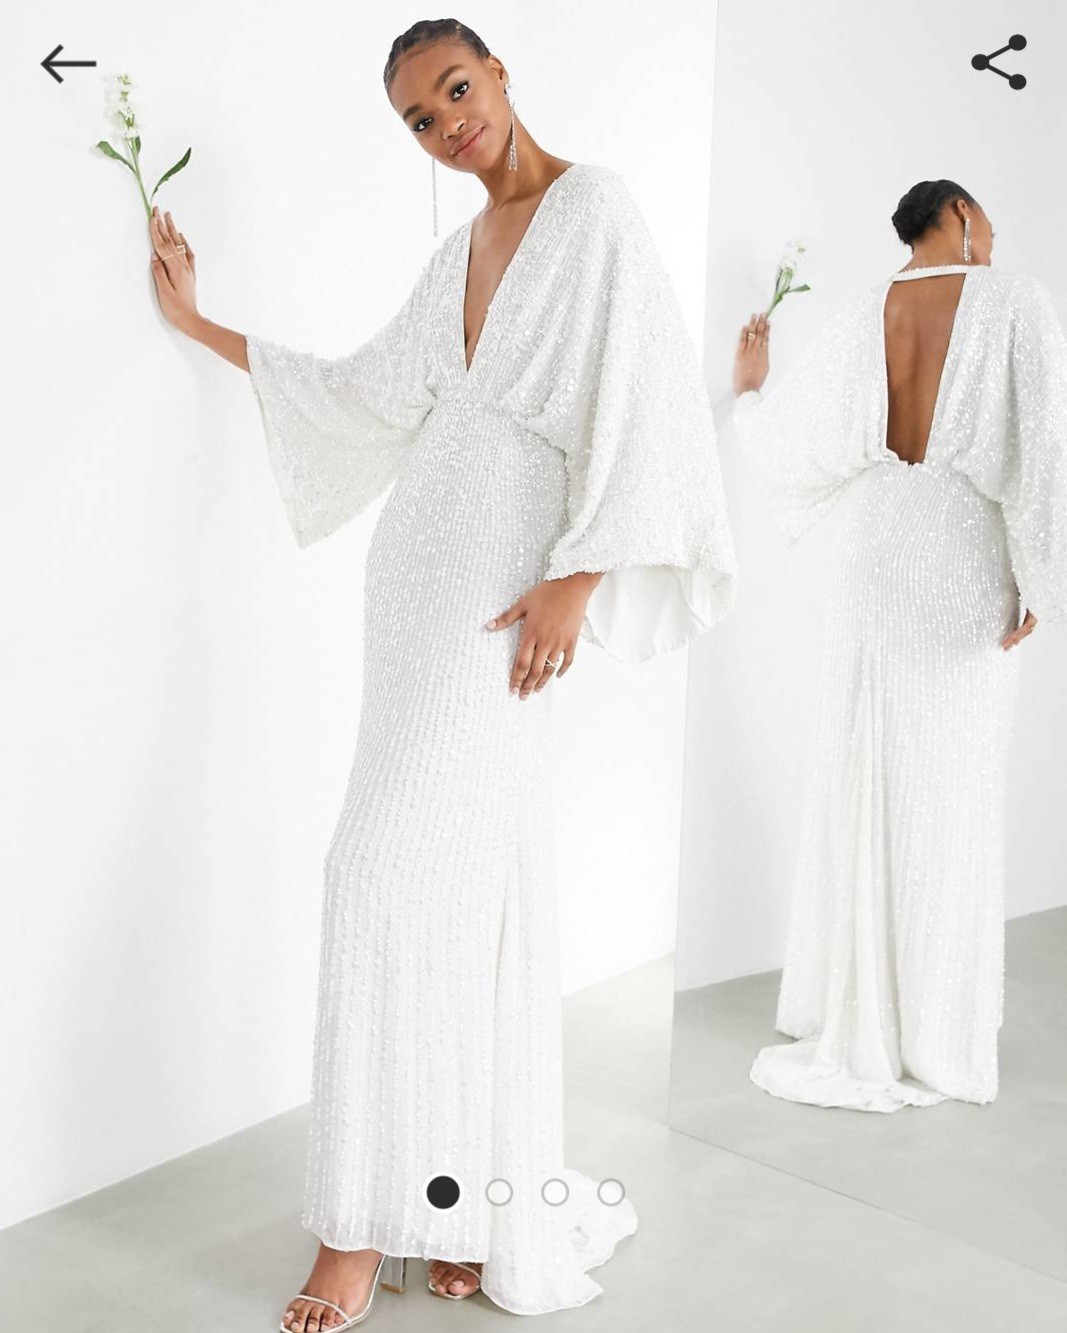 ASOS Bridal Ciara sequin kimono sleeve wedding dress New Dress Save 15% - Stillwhite